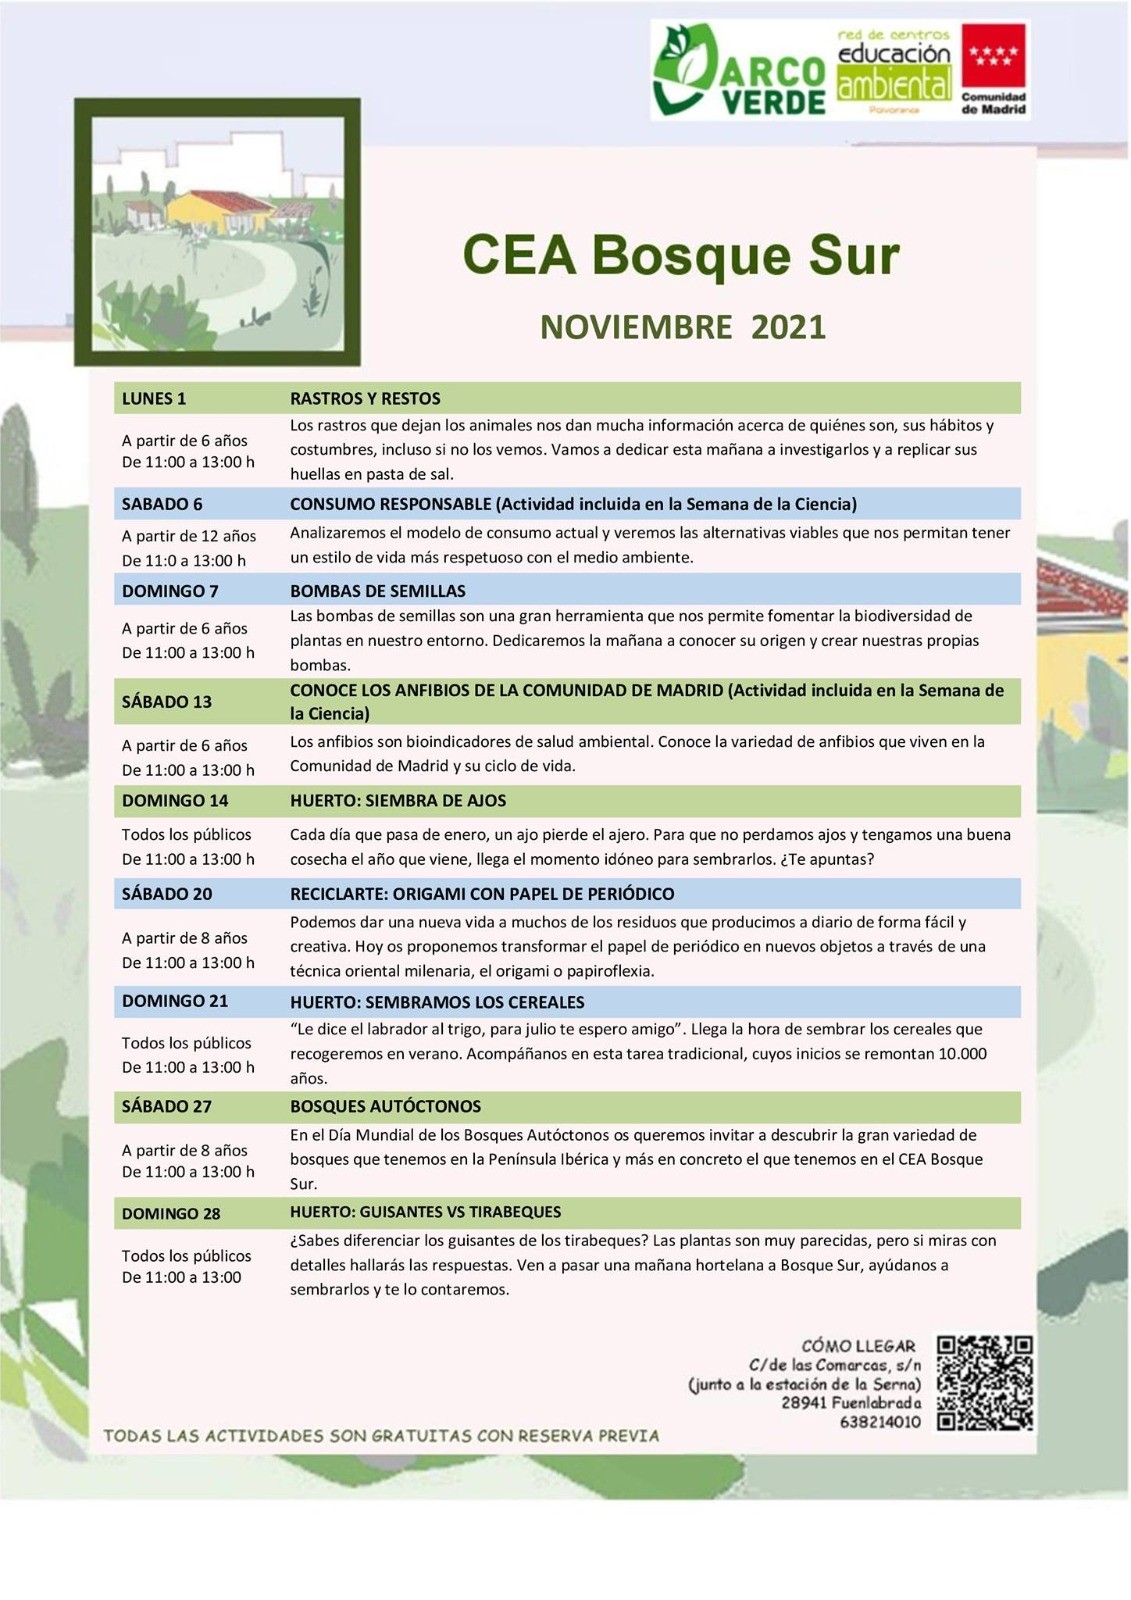 Bosque Surbosquesur CEA leganes actividades ambientales